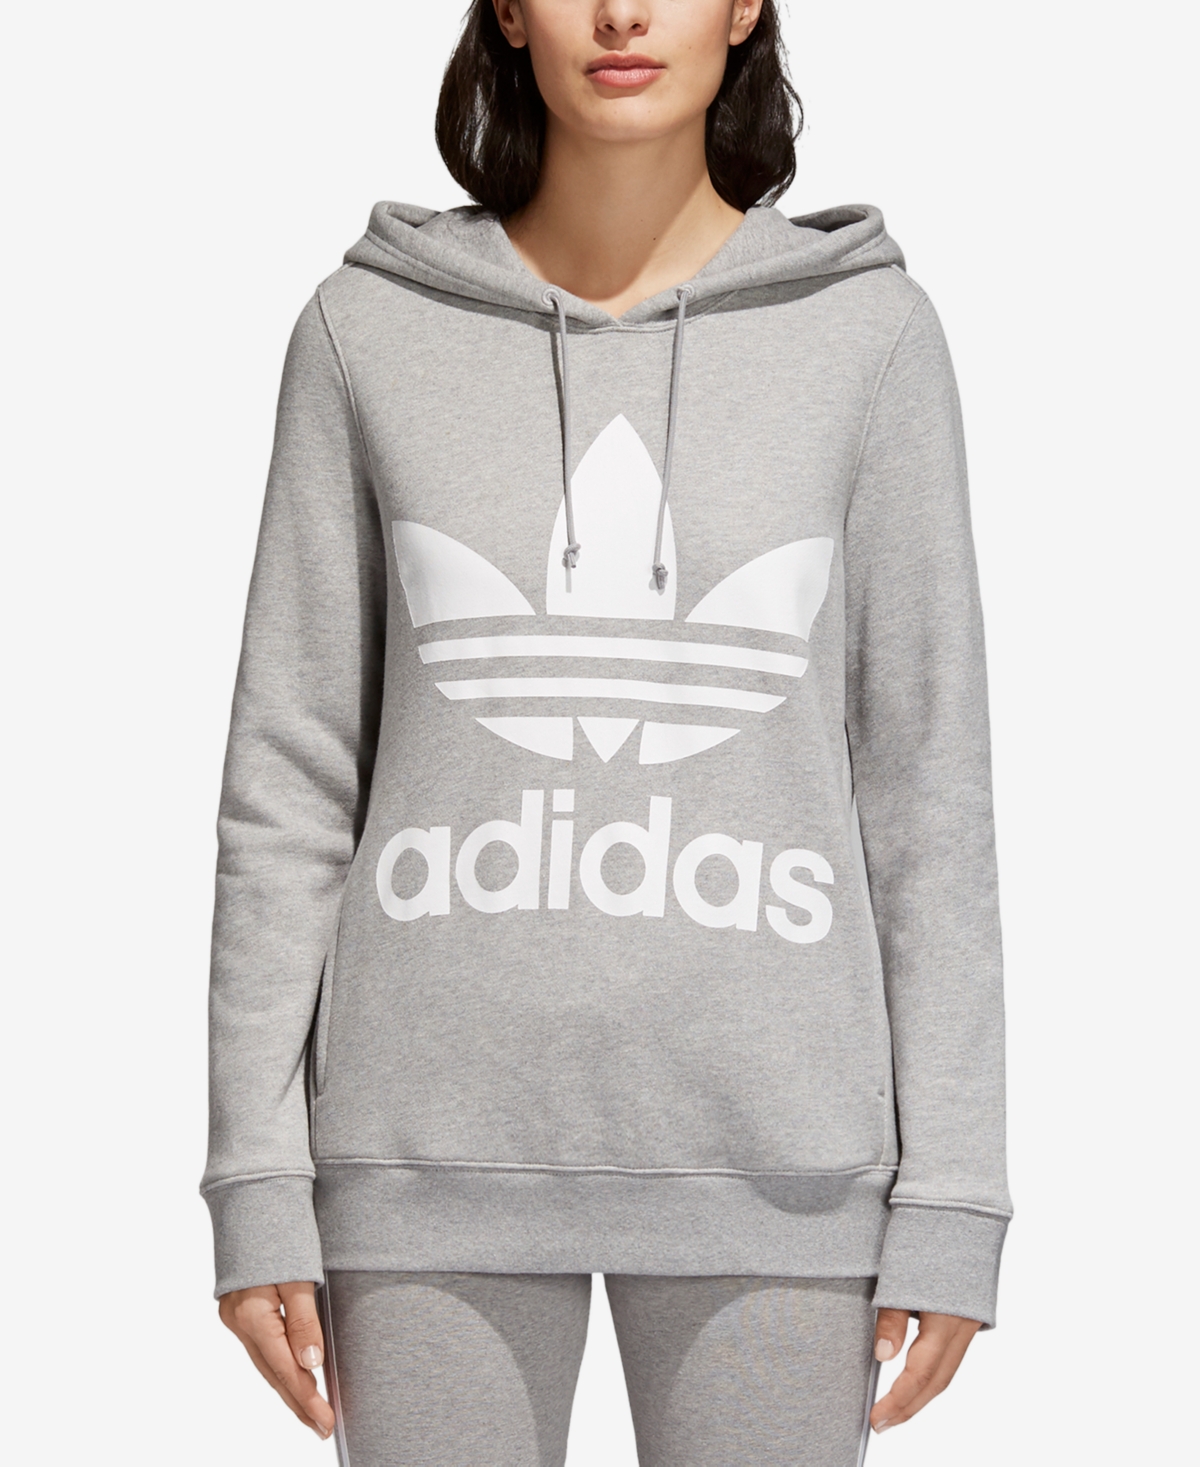 adidas Originals Women's Adicolor Trefoil Sweatshirt Hoodie, Xs-4X